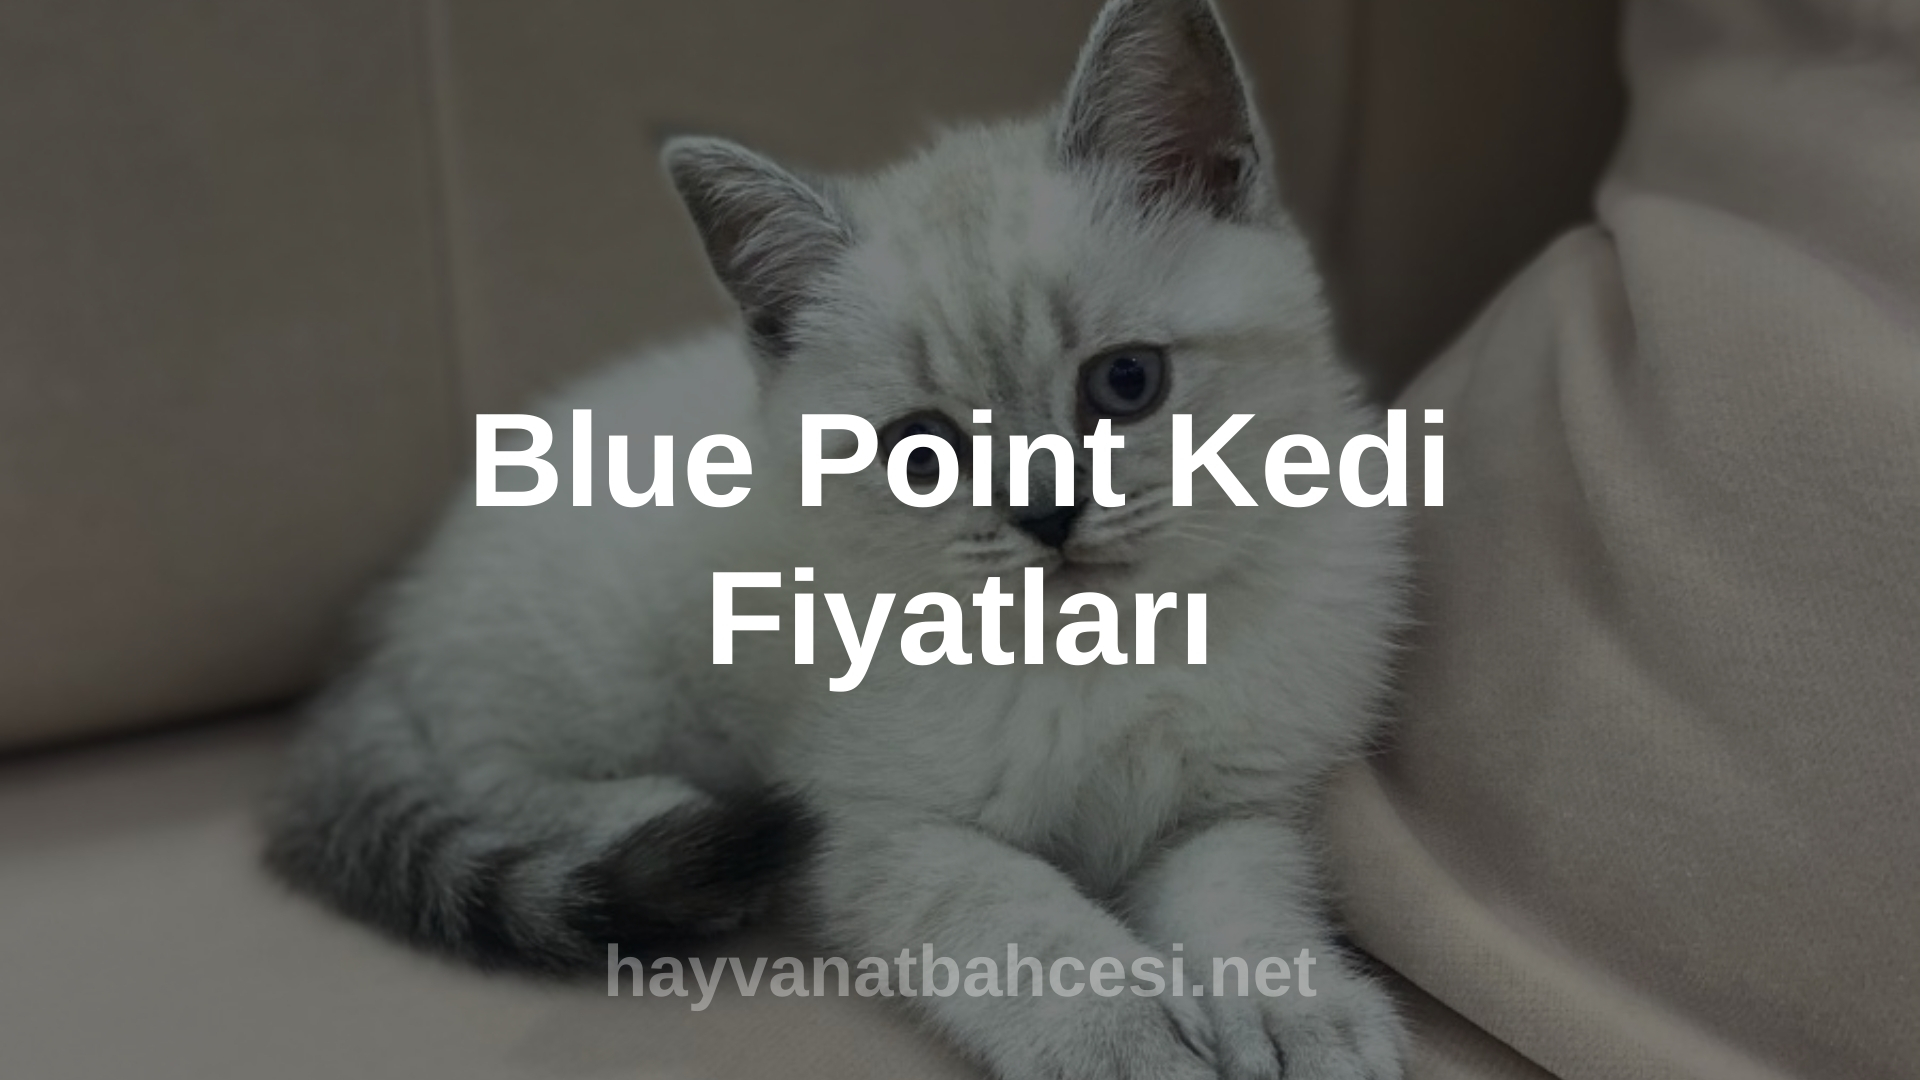 Blue Point Kedi Fiyatlari